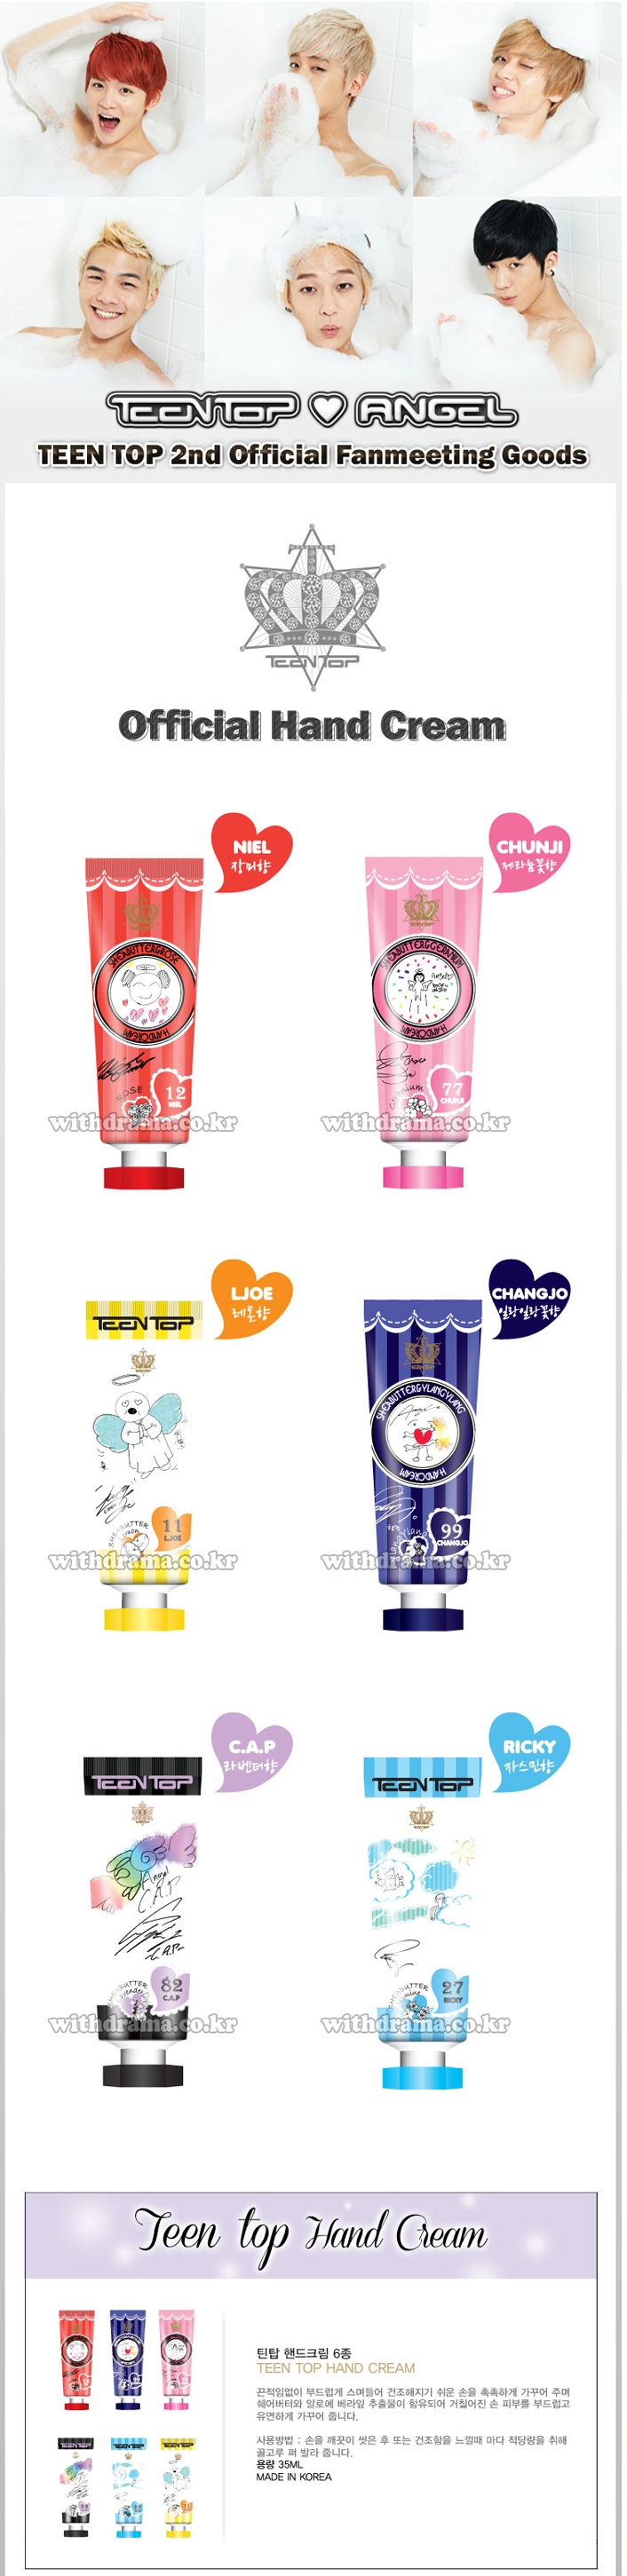 Fan Meeting Official Goods,TEEN TOP,Hand Cream